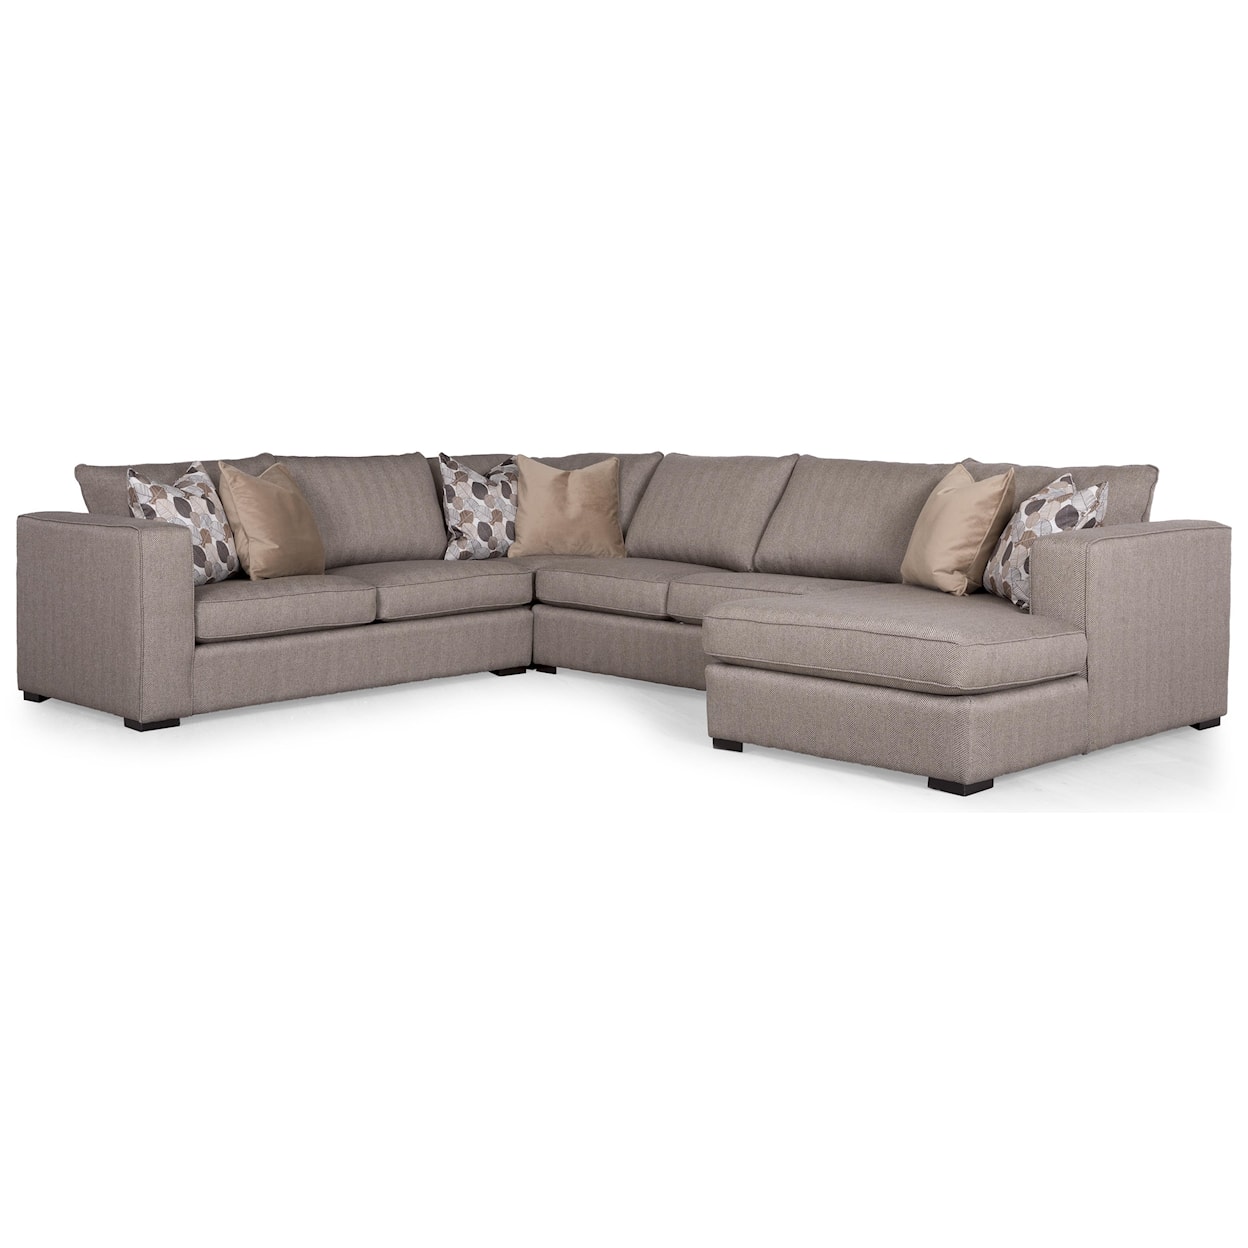 Taelor Designs Braden Sectional Sofa